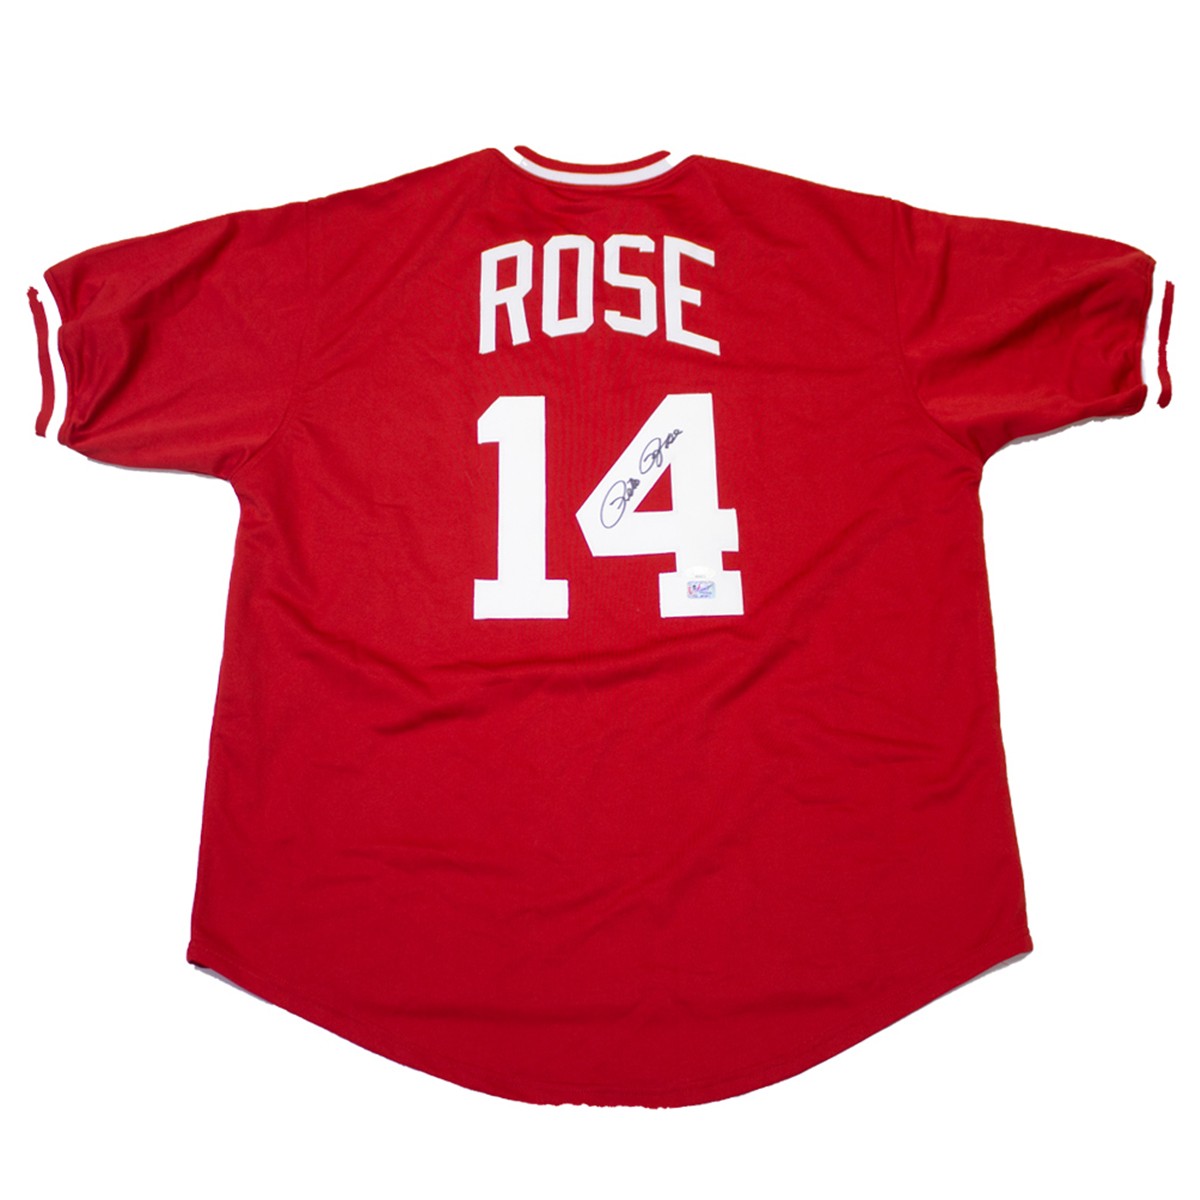 Pete Rose Signed Autographed Cincinnati Reds Hit King Jersey JSA